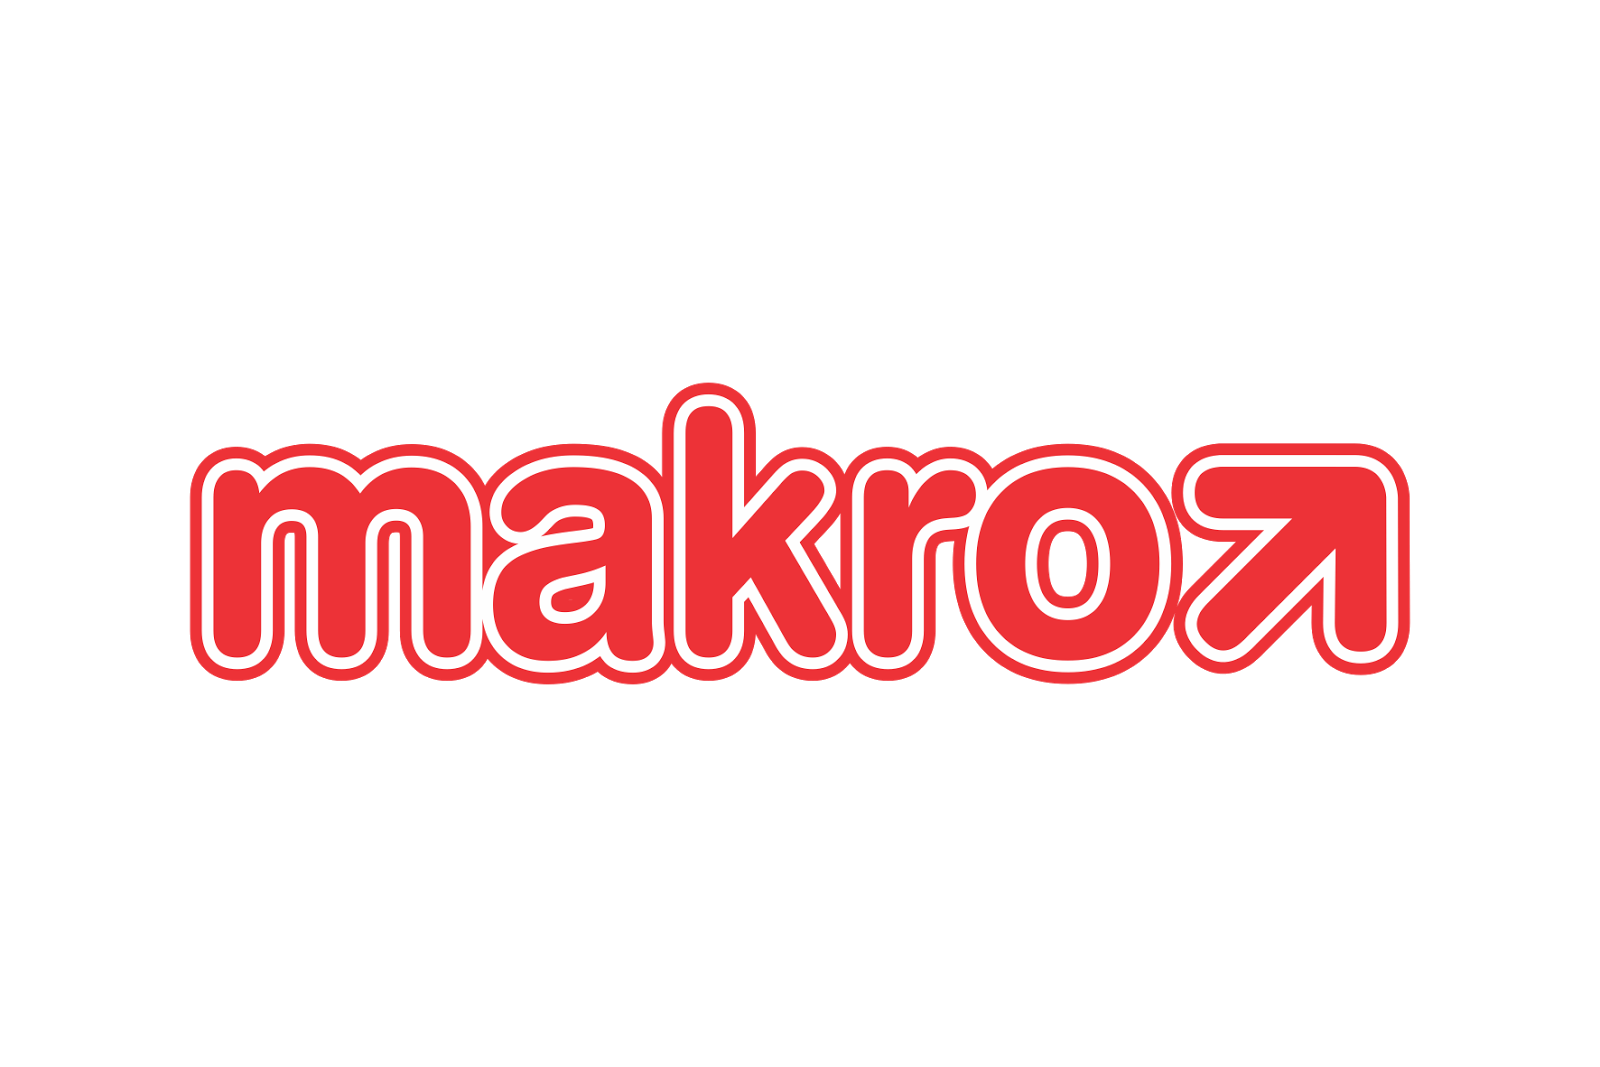 Makro Logo - Makro Logo - logo cdr vector